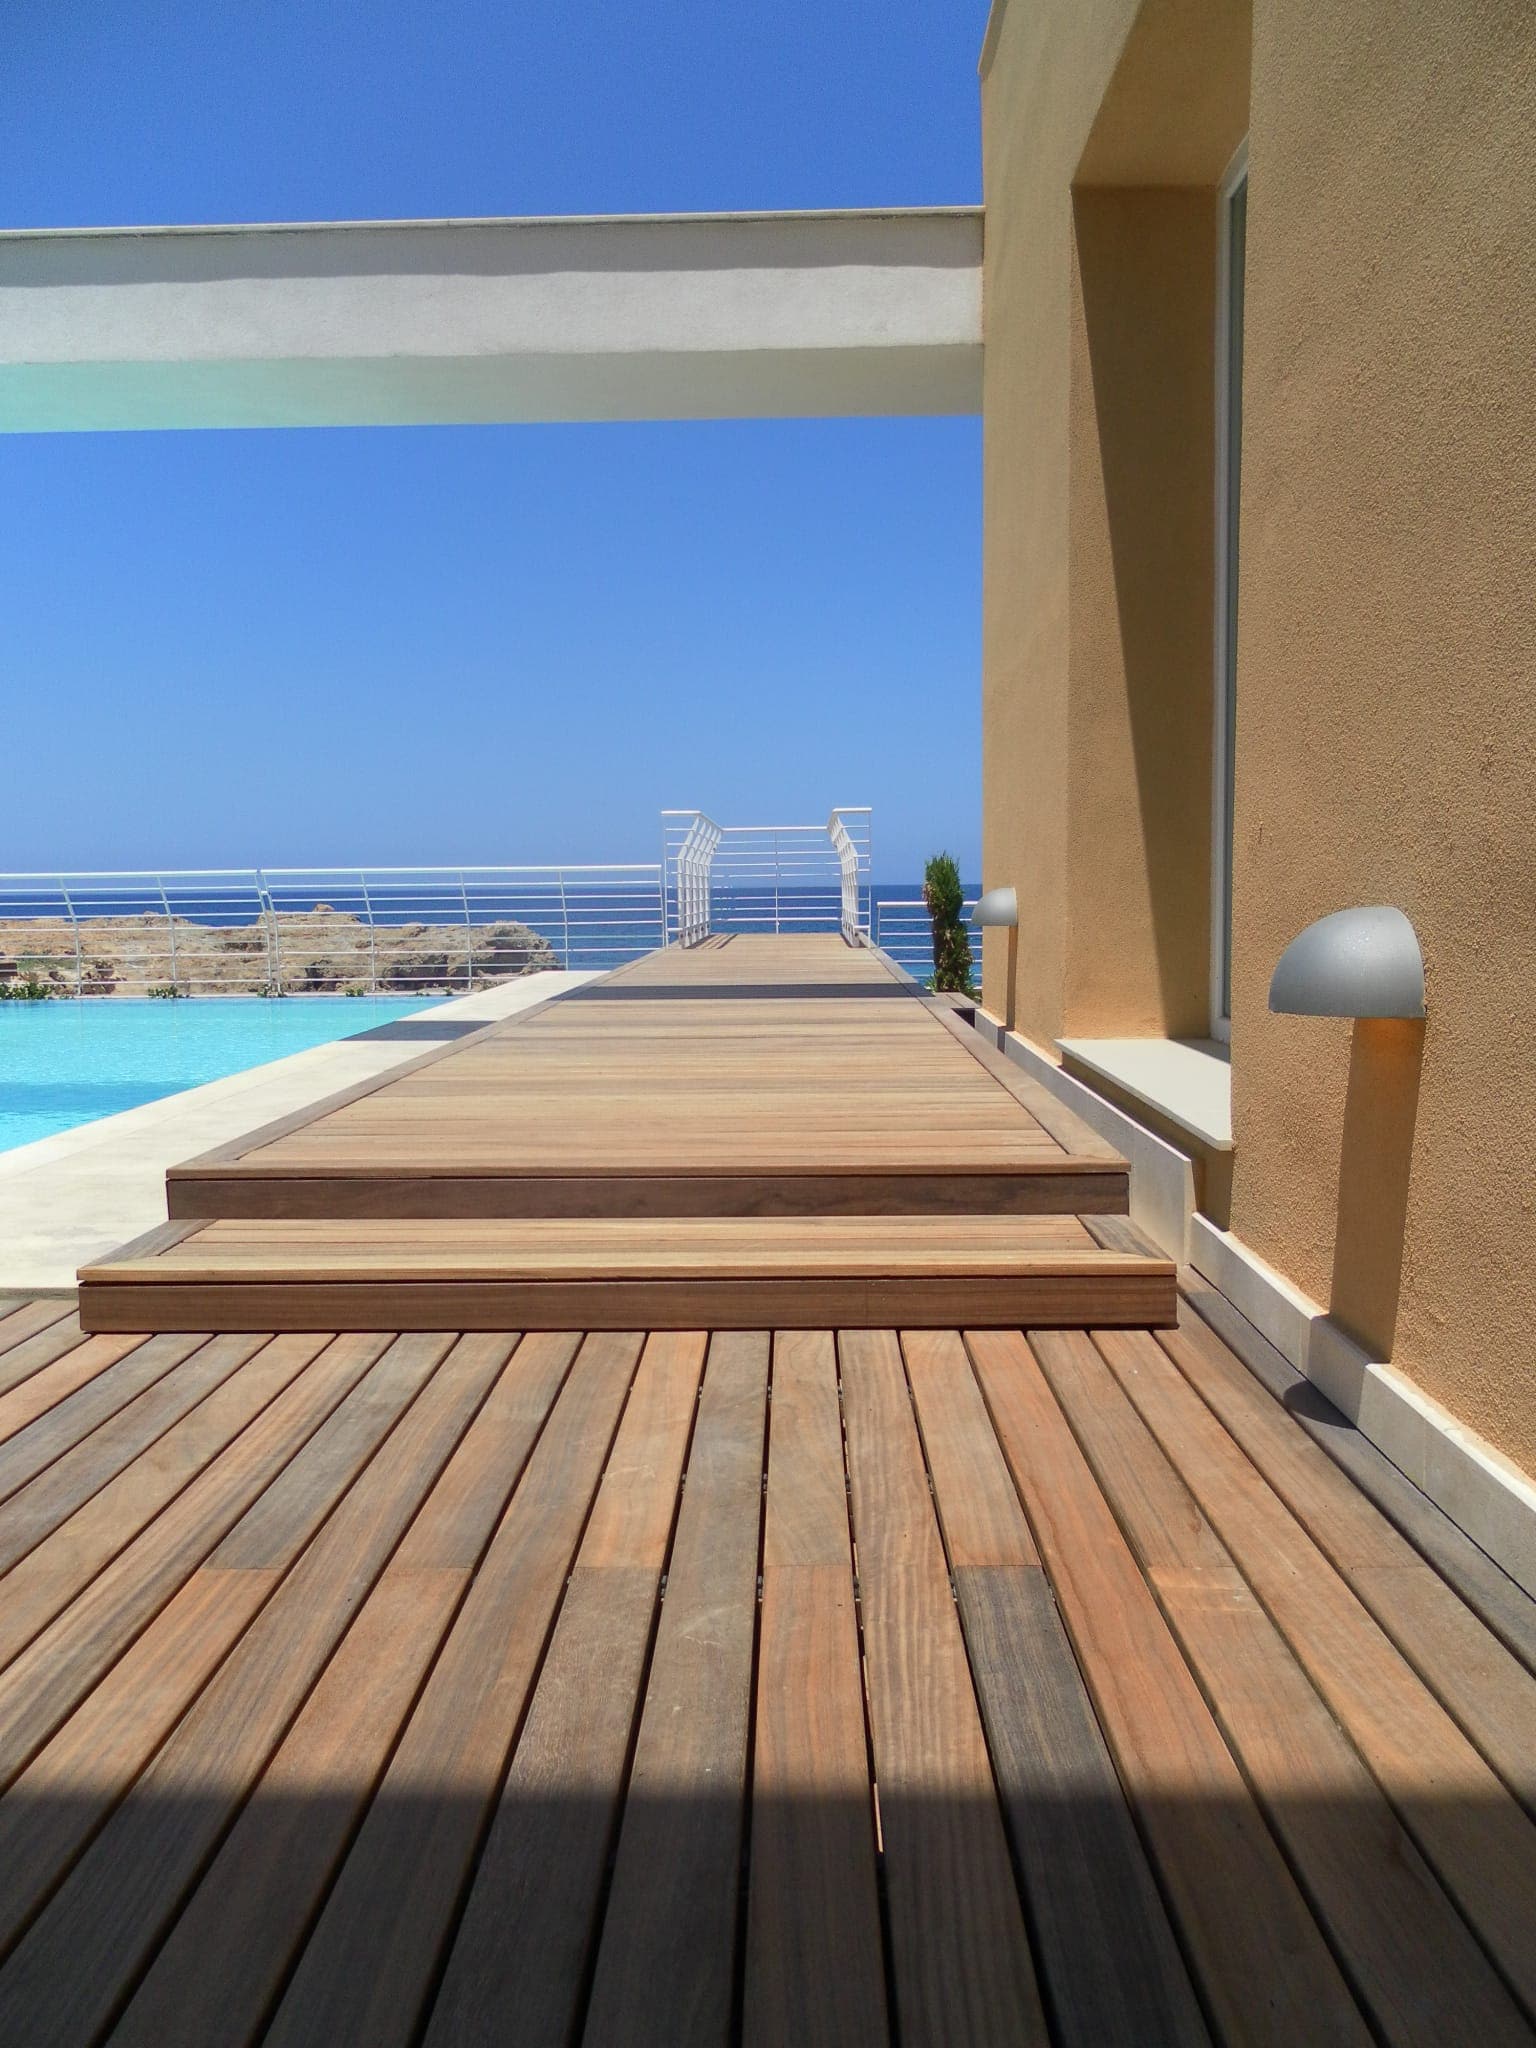 Terrasse en padouk Nice pool in Malta full of wood padauk decking system by Vetedy Softline without screws